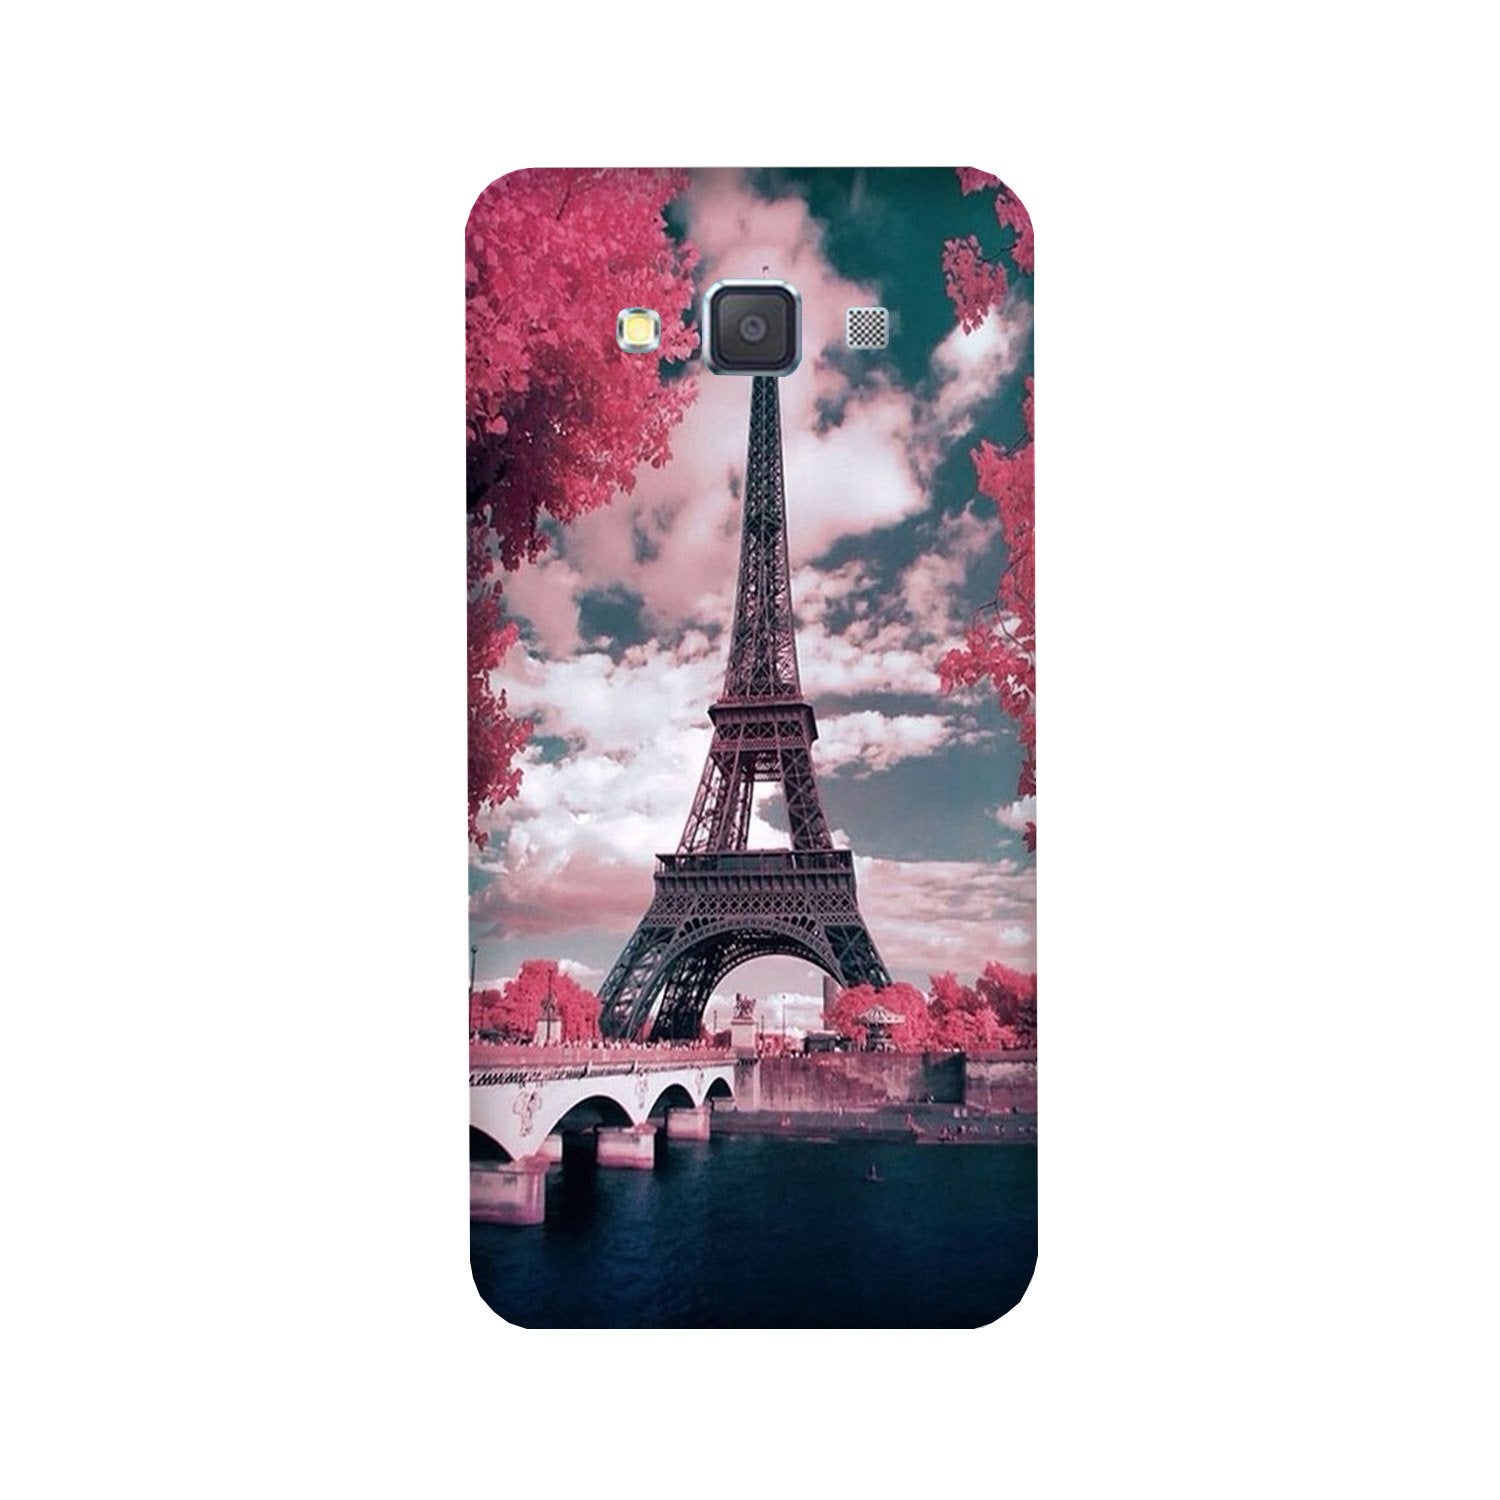 Eiffel Tower Case for Galaxy A3 (2015)(Design - 101)